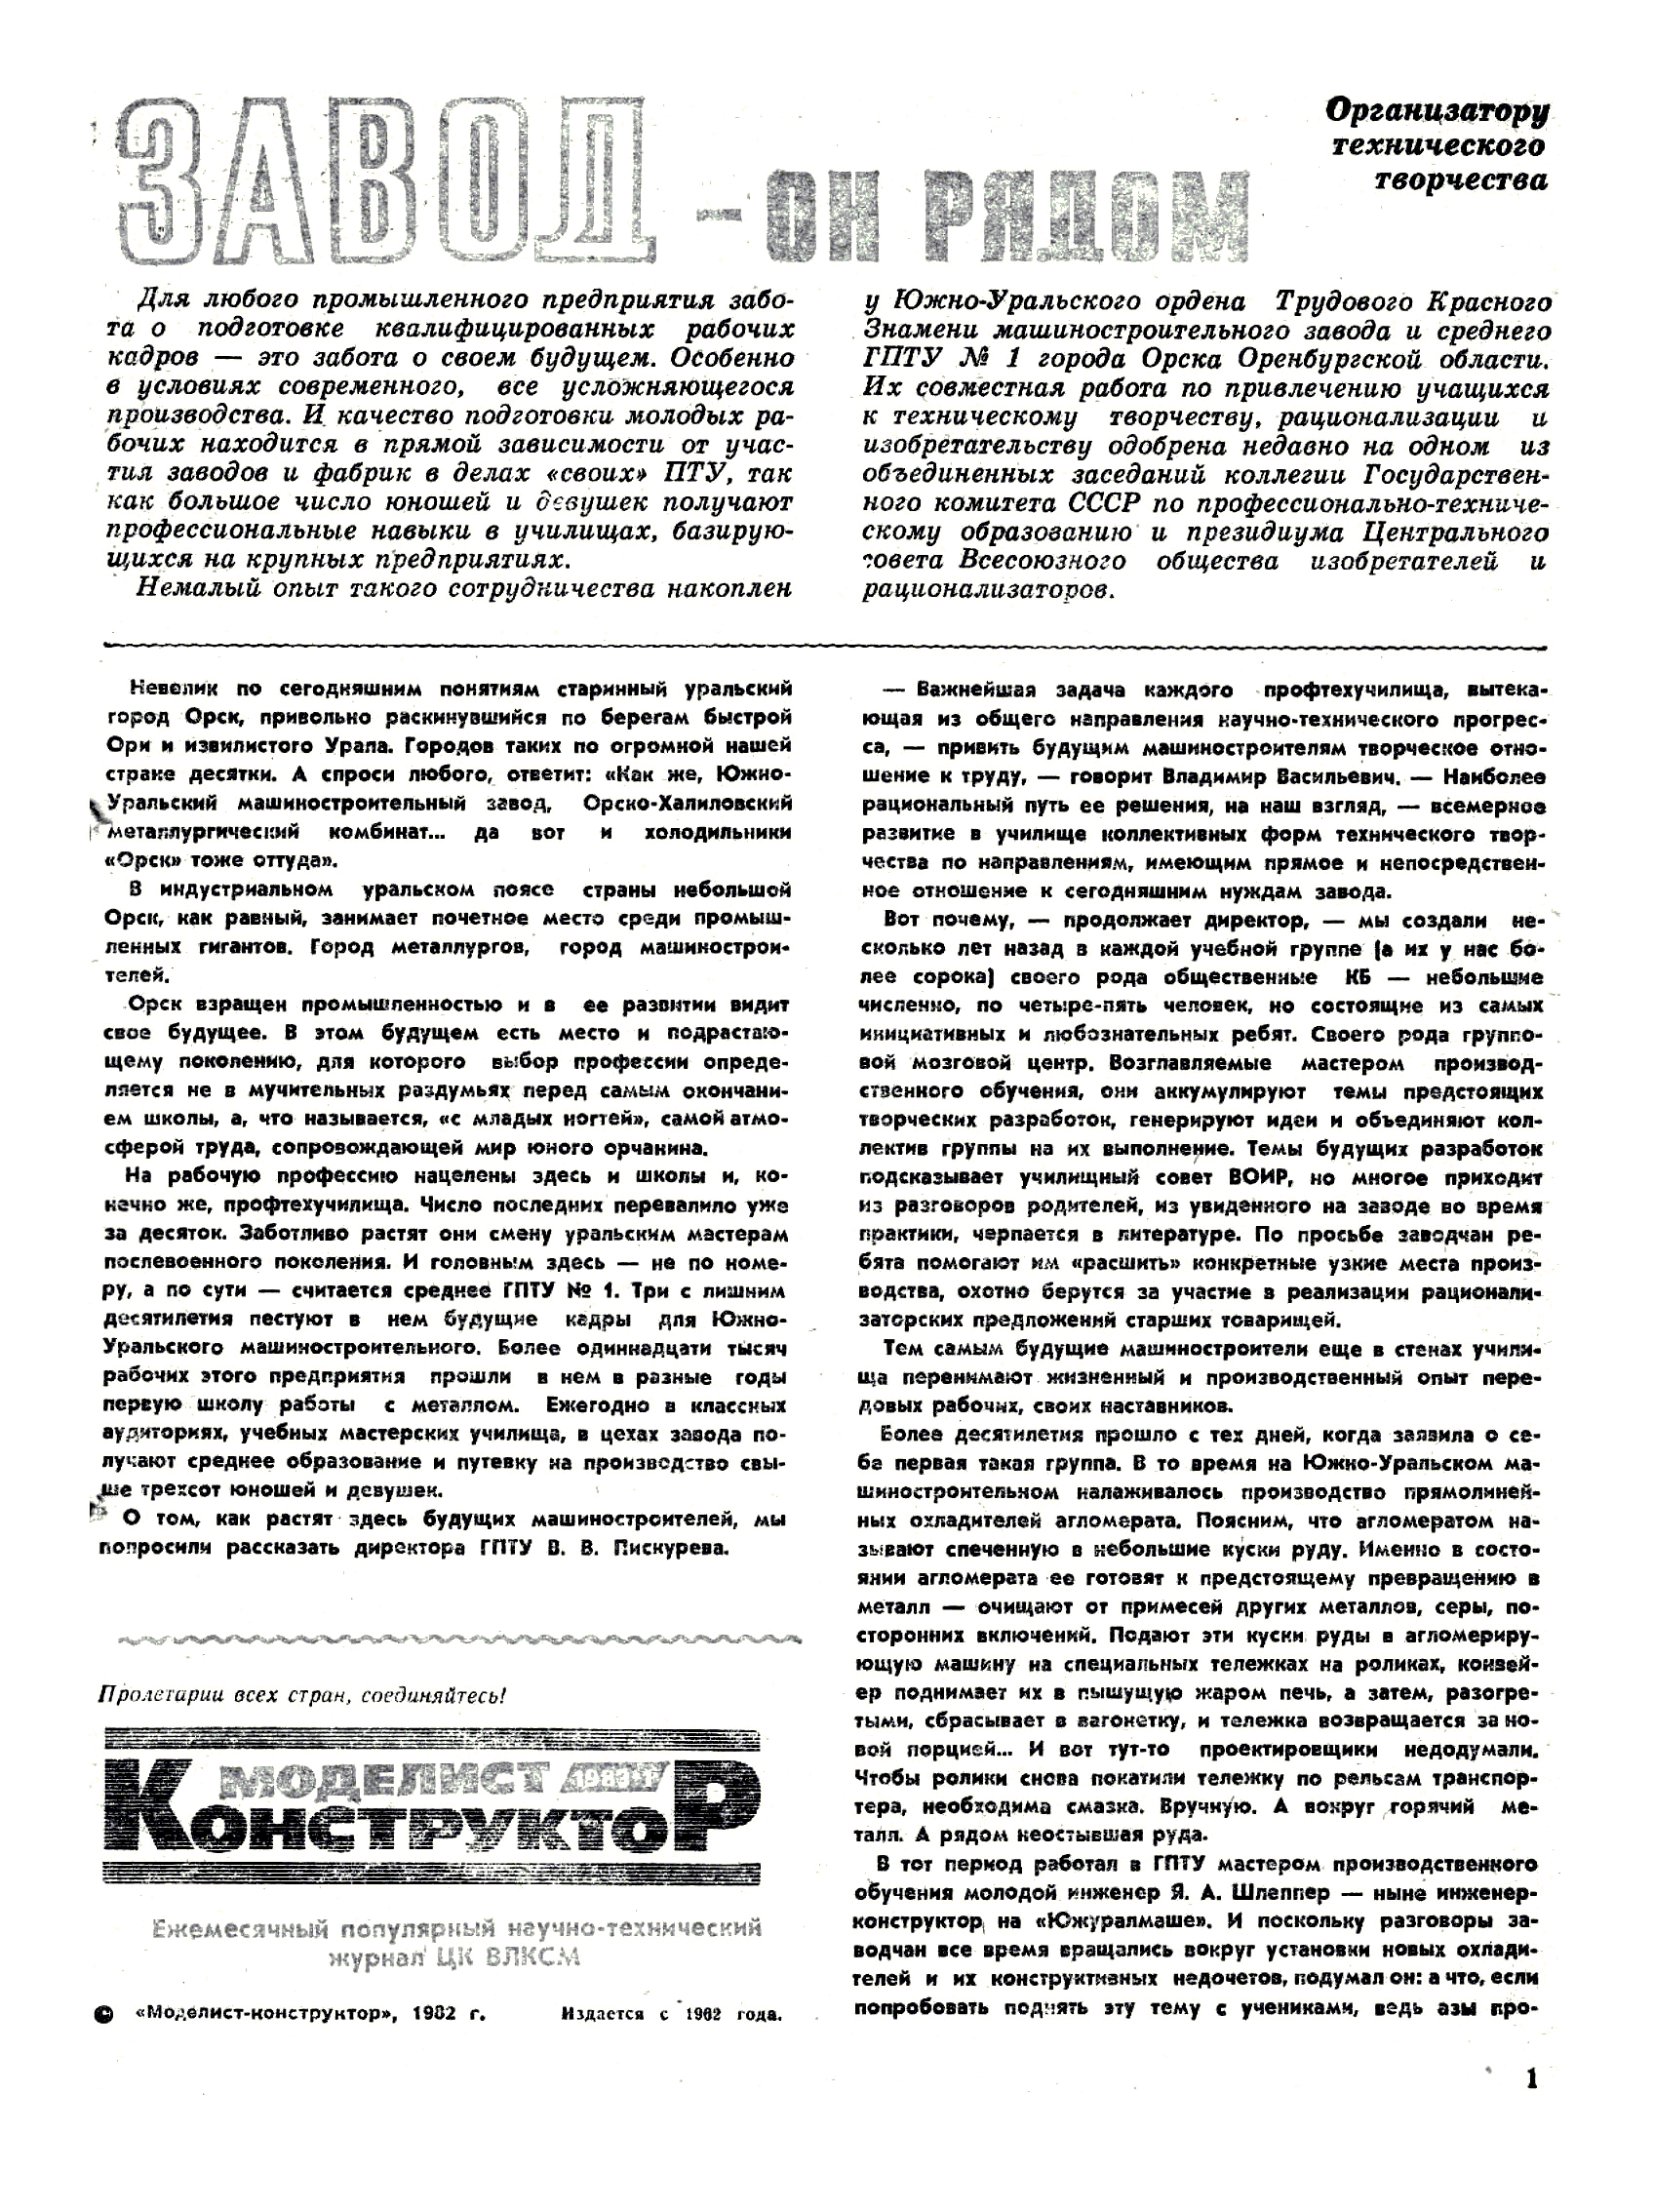 МК 1, 1983, 1 c.